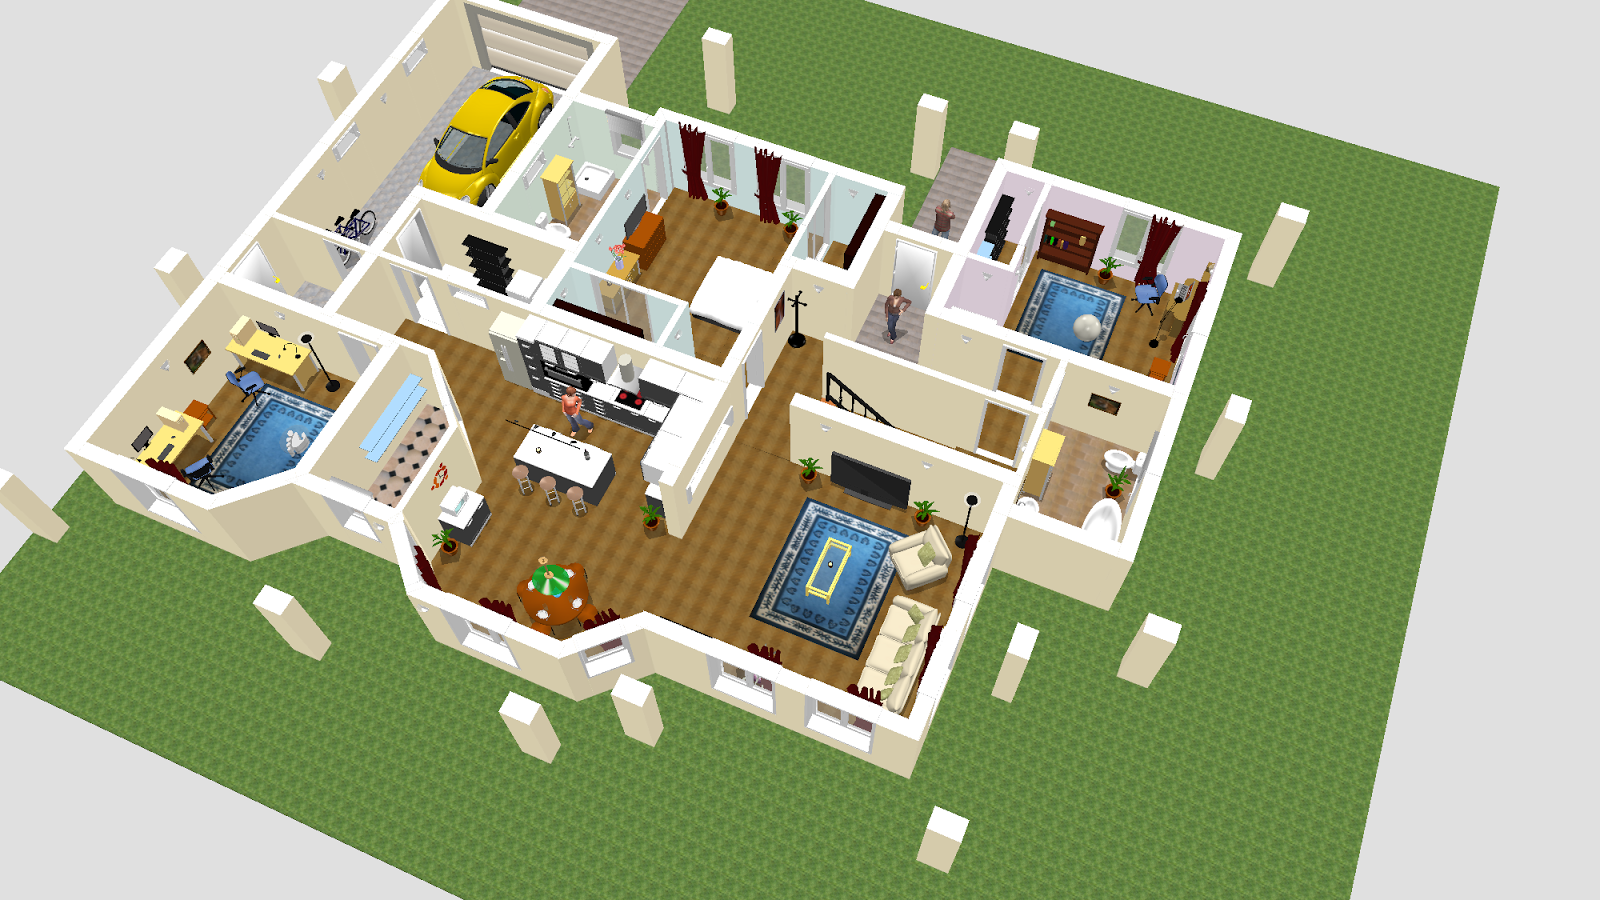 برنامج تصميم المنزل من الداخل و الديكور Sweet Home 3d زووم على التقنية